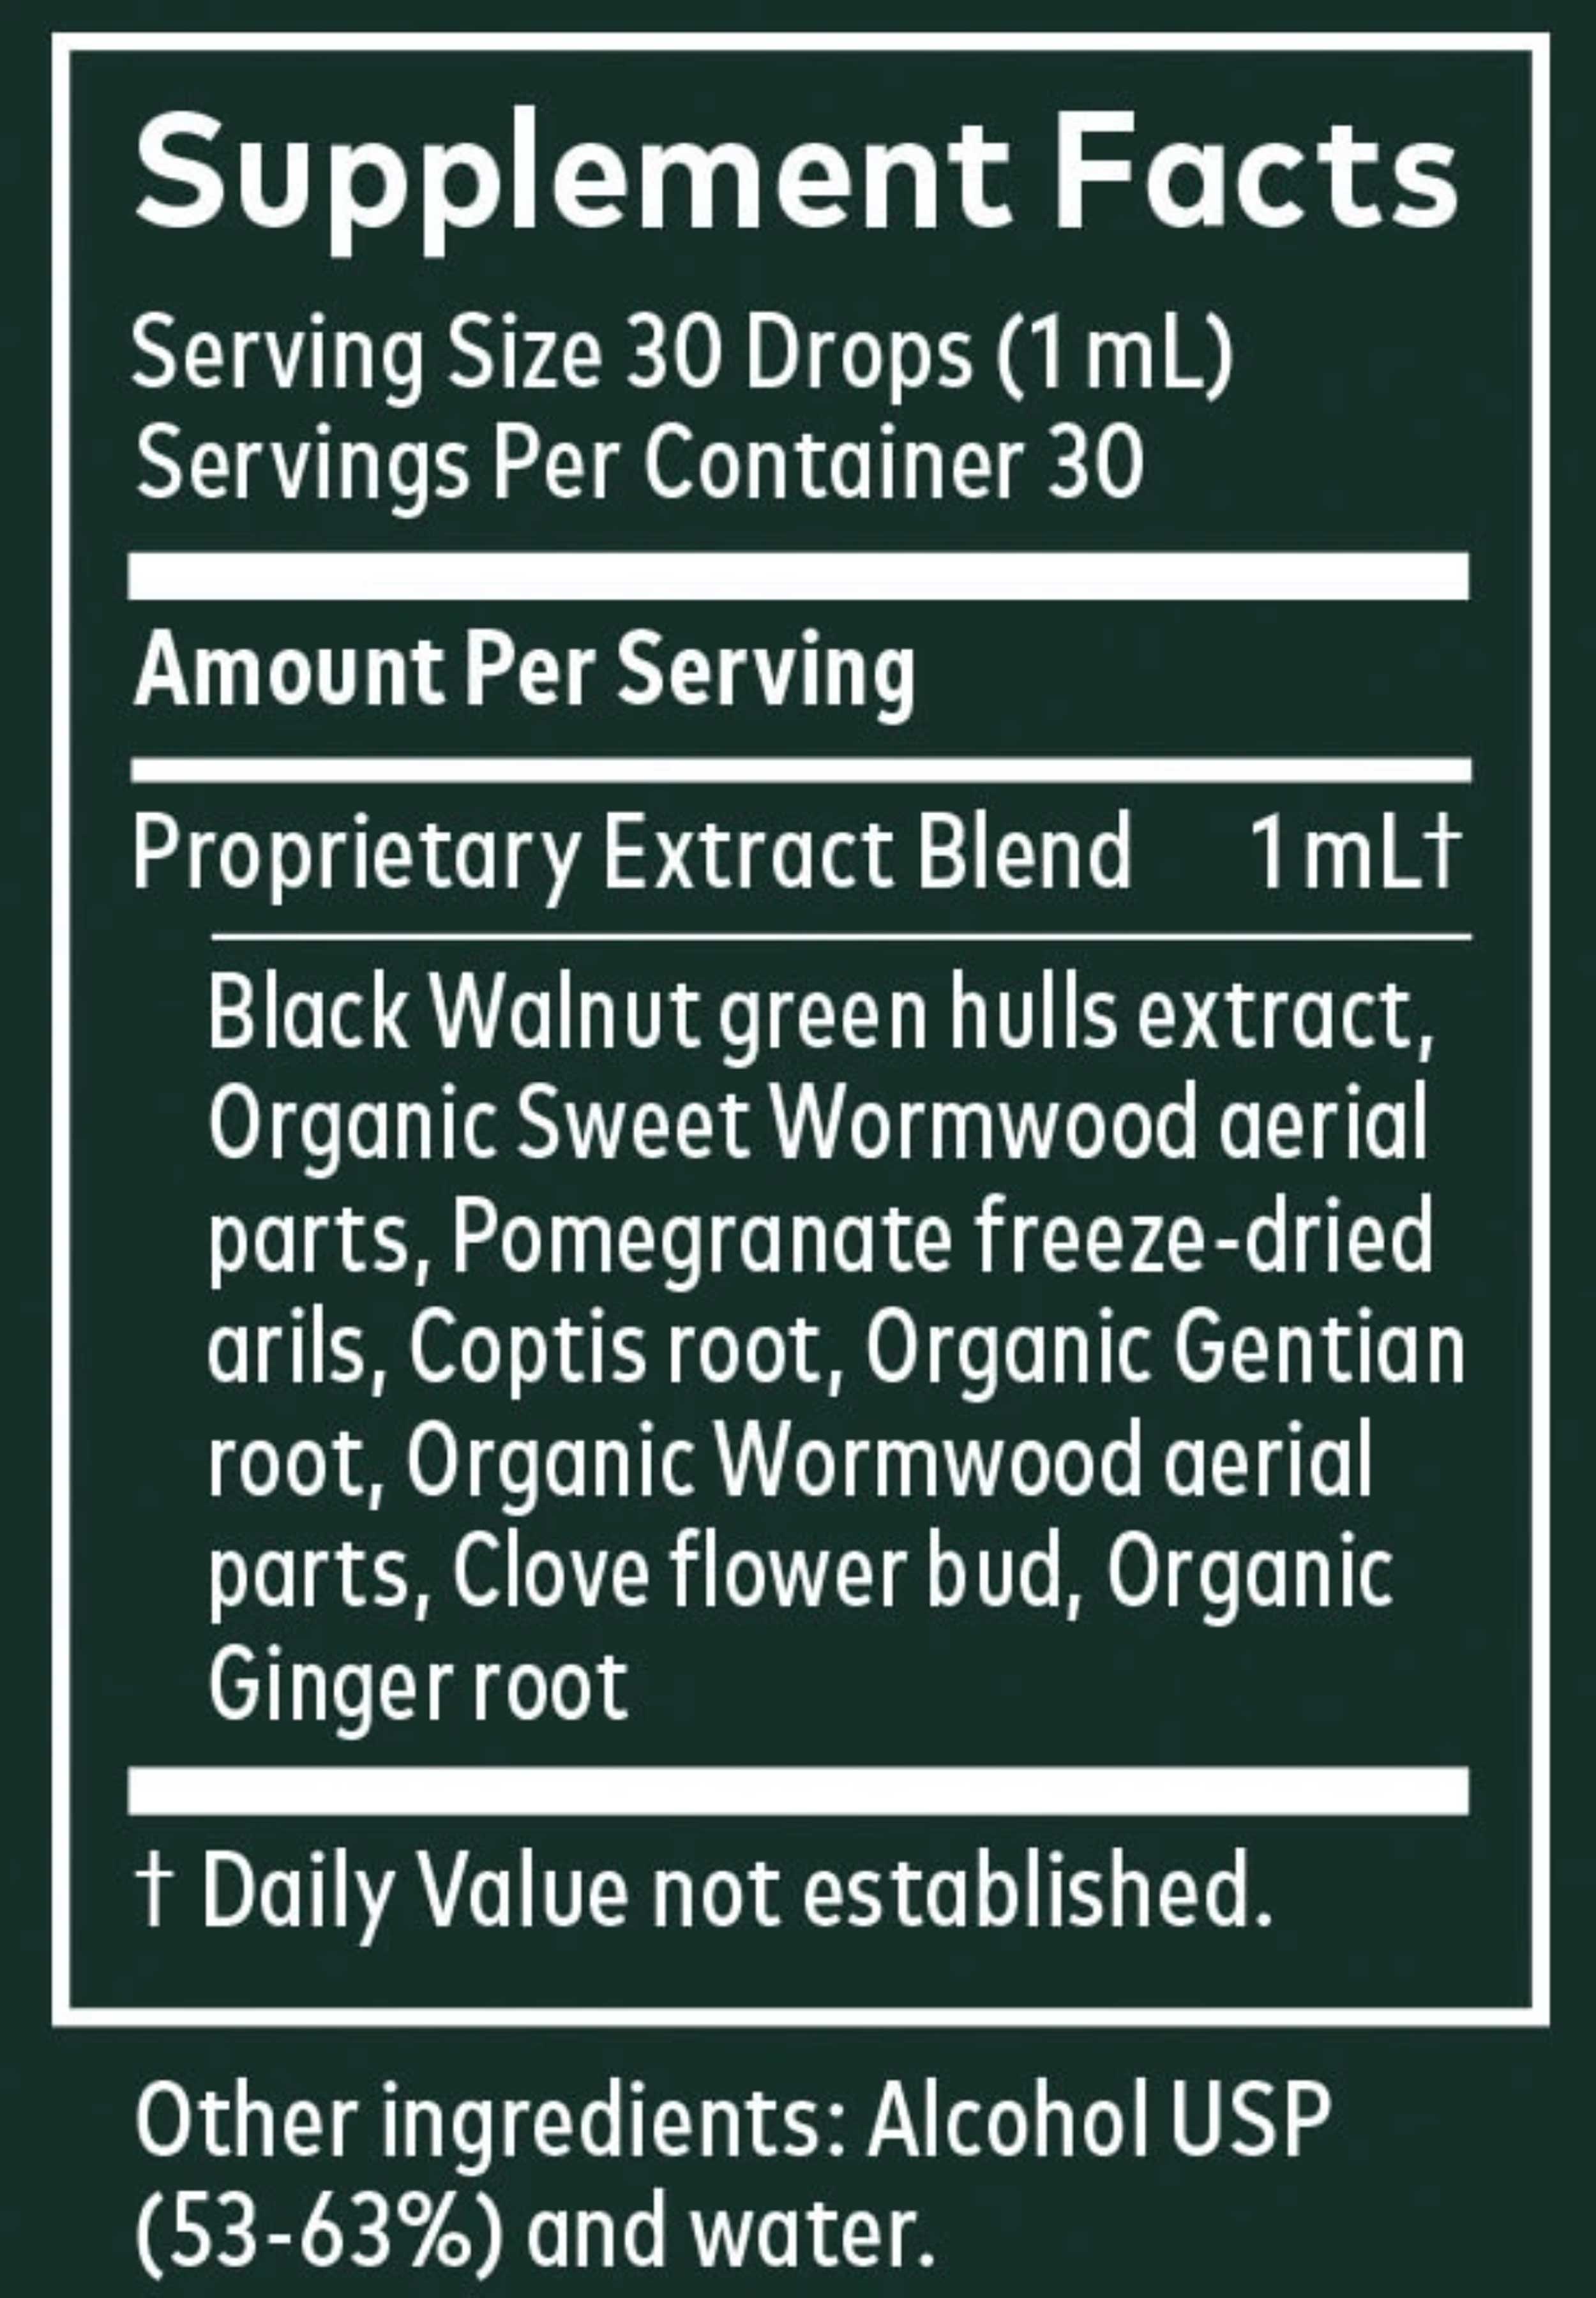 Sweet Wormwood: Gaia Herbs®